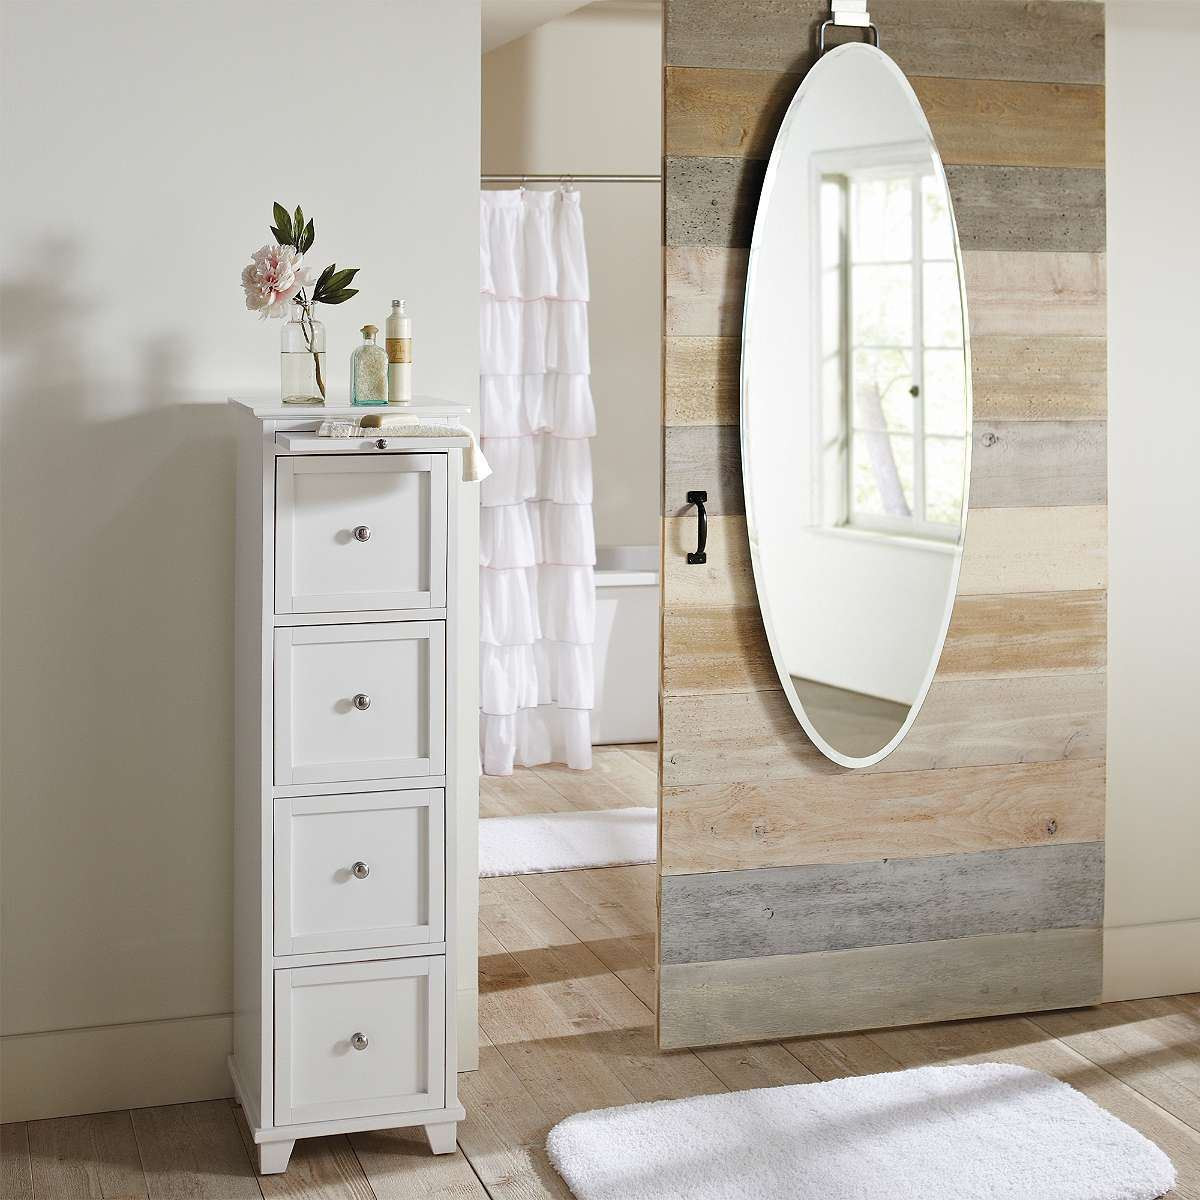 Bathroom Door Mirror
 Bring Home Functional Style with an Over the Door Mirror